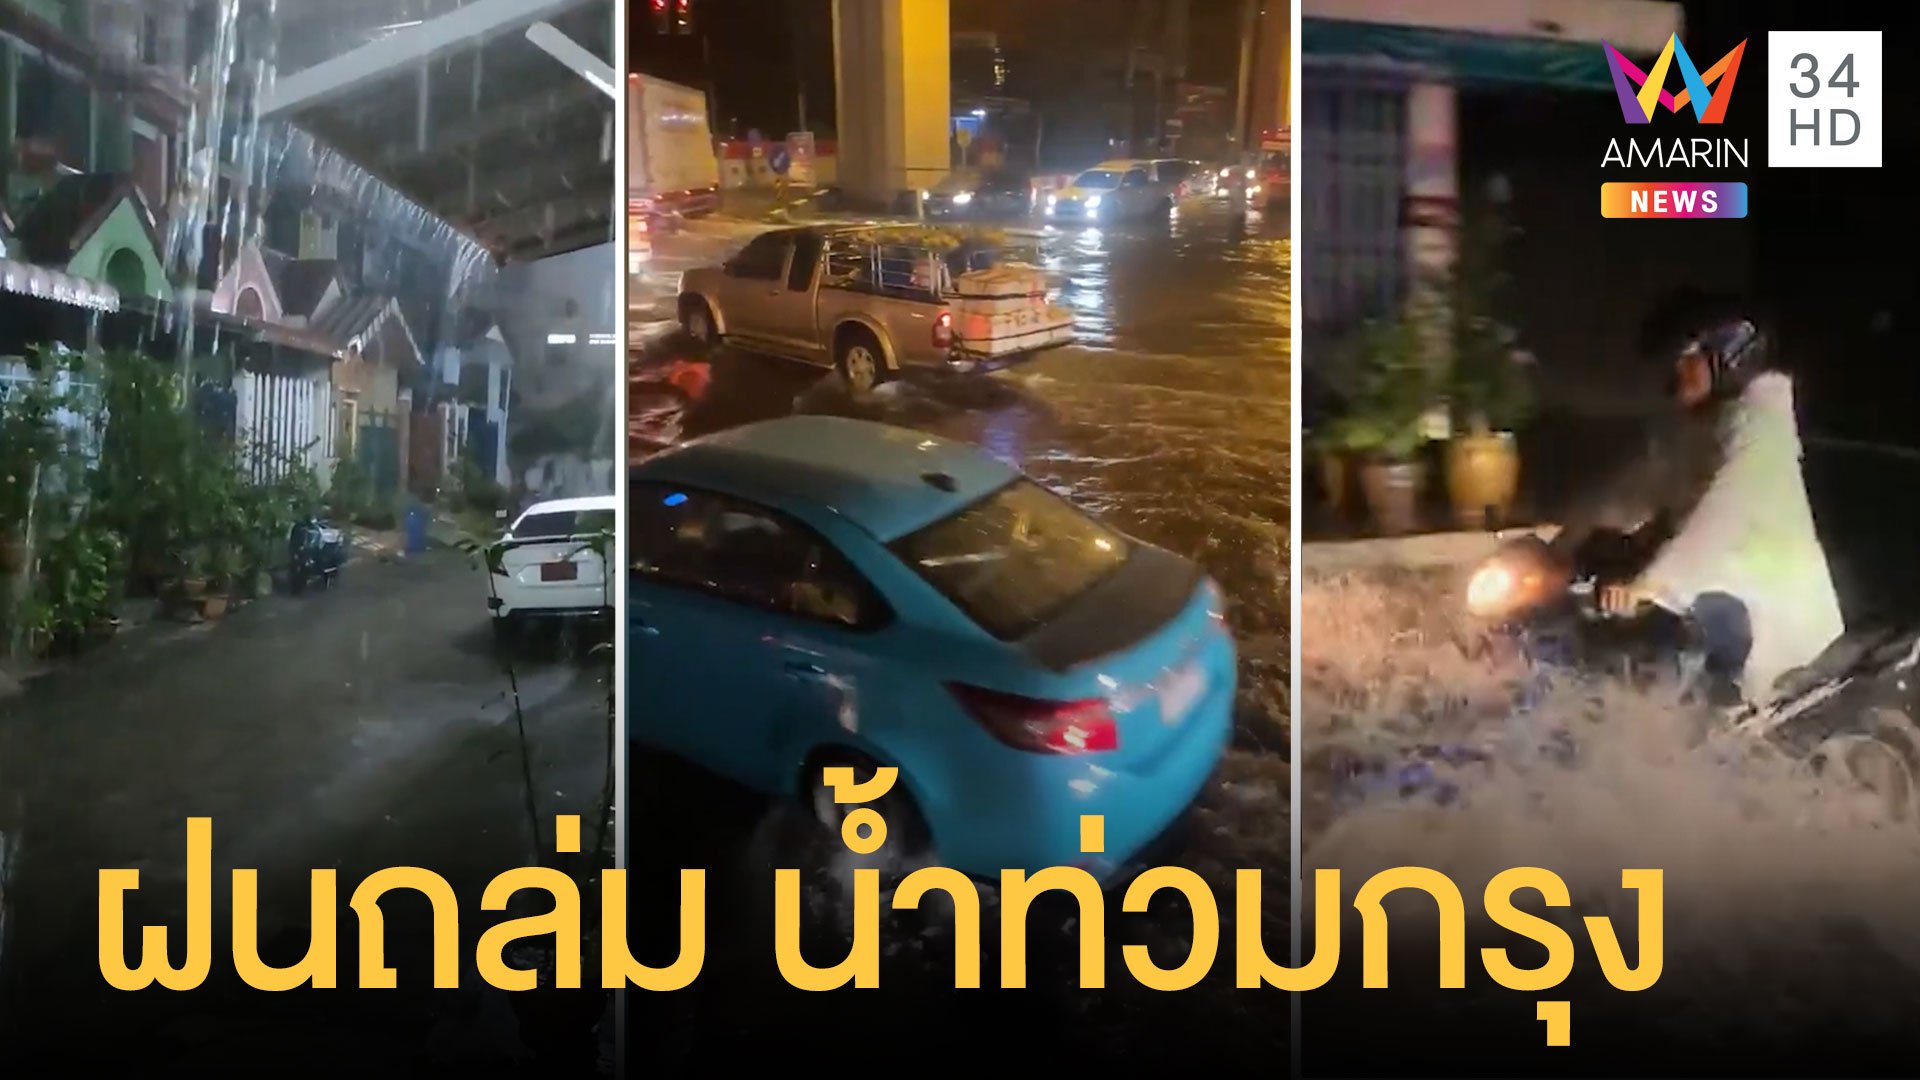 กรุงเทพวิกฤต ฝนตกหนักน้ำท่วมทั่วกรุง | ข่าวอรุณอมรินทร์ | 1 ก.ย. 63 | AMARIN TVHD34